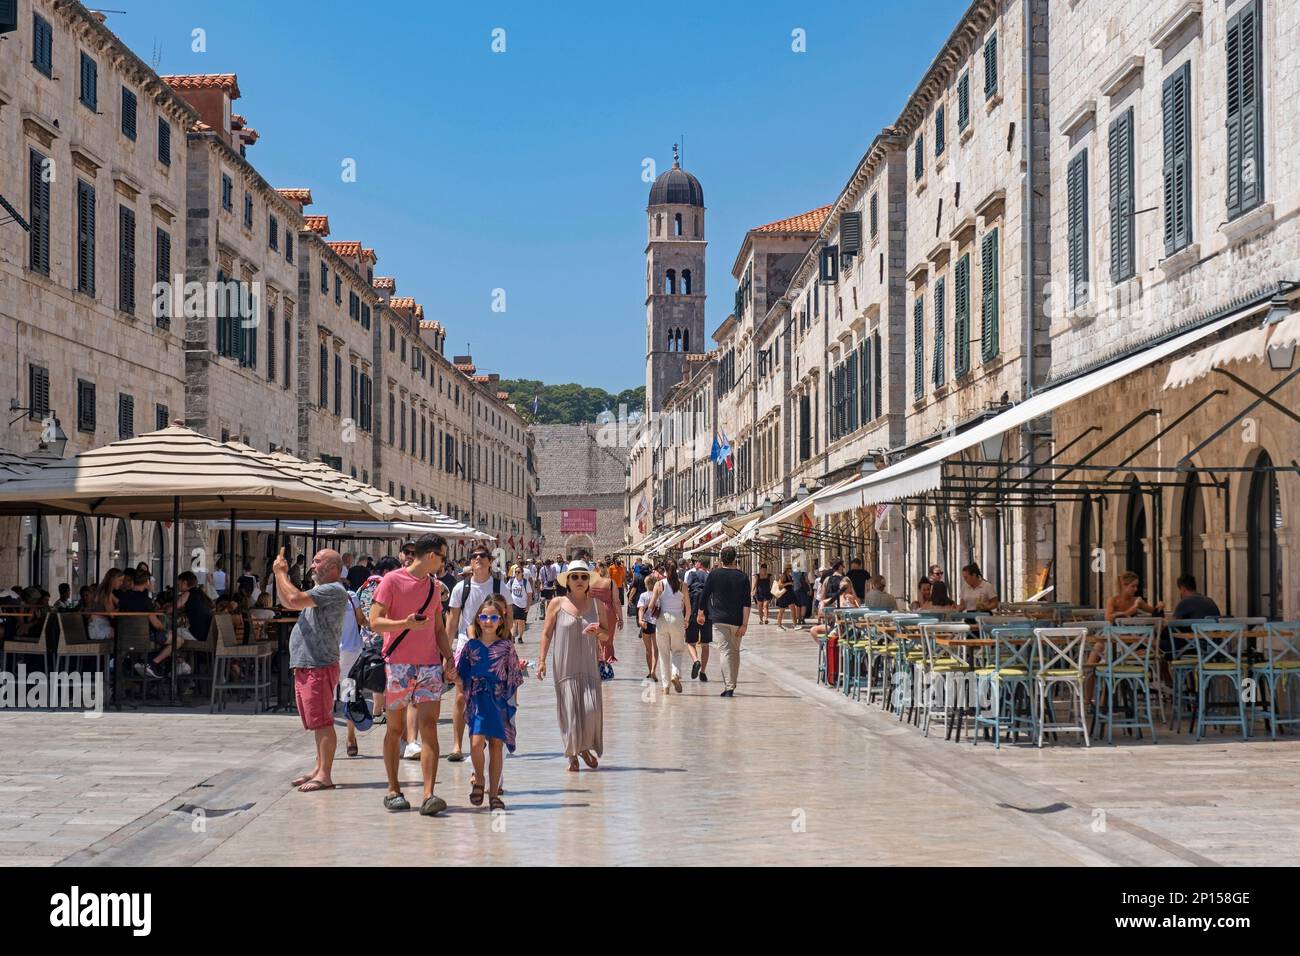 Campanile e turisti shopping a Stradun / Placa, strada principale nella città vecchia, centro storico di Dubrovnik, Dalmazia meridionale, Croazia Foto Stock